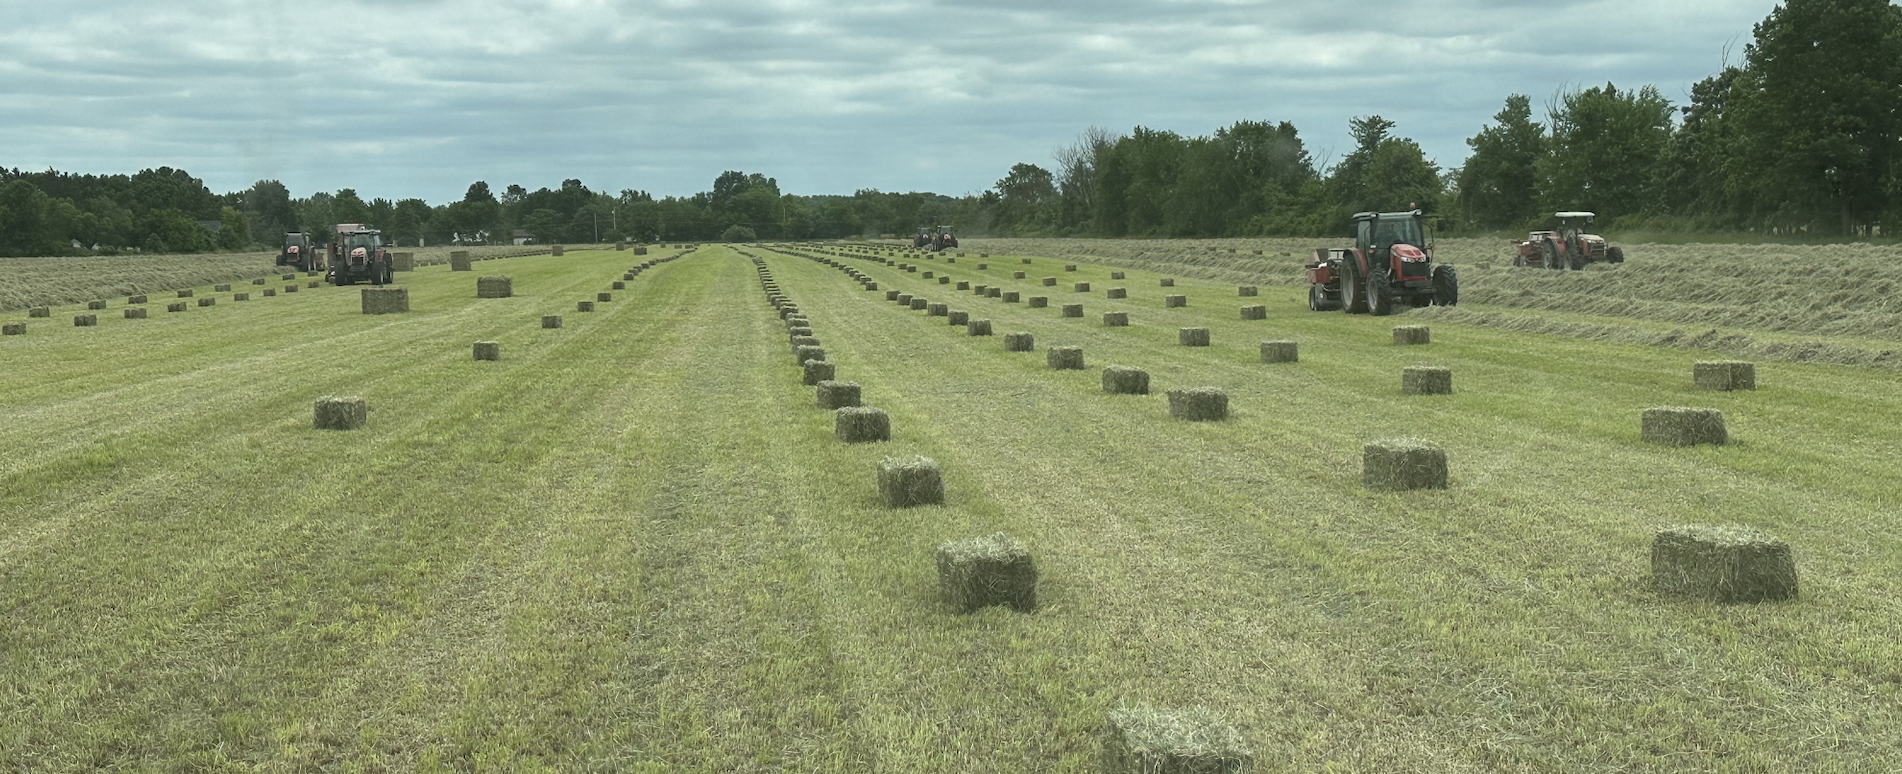 <img src="hayfield.jpg" alt="Bales of hay in a field" />